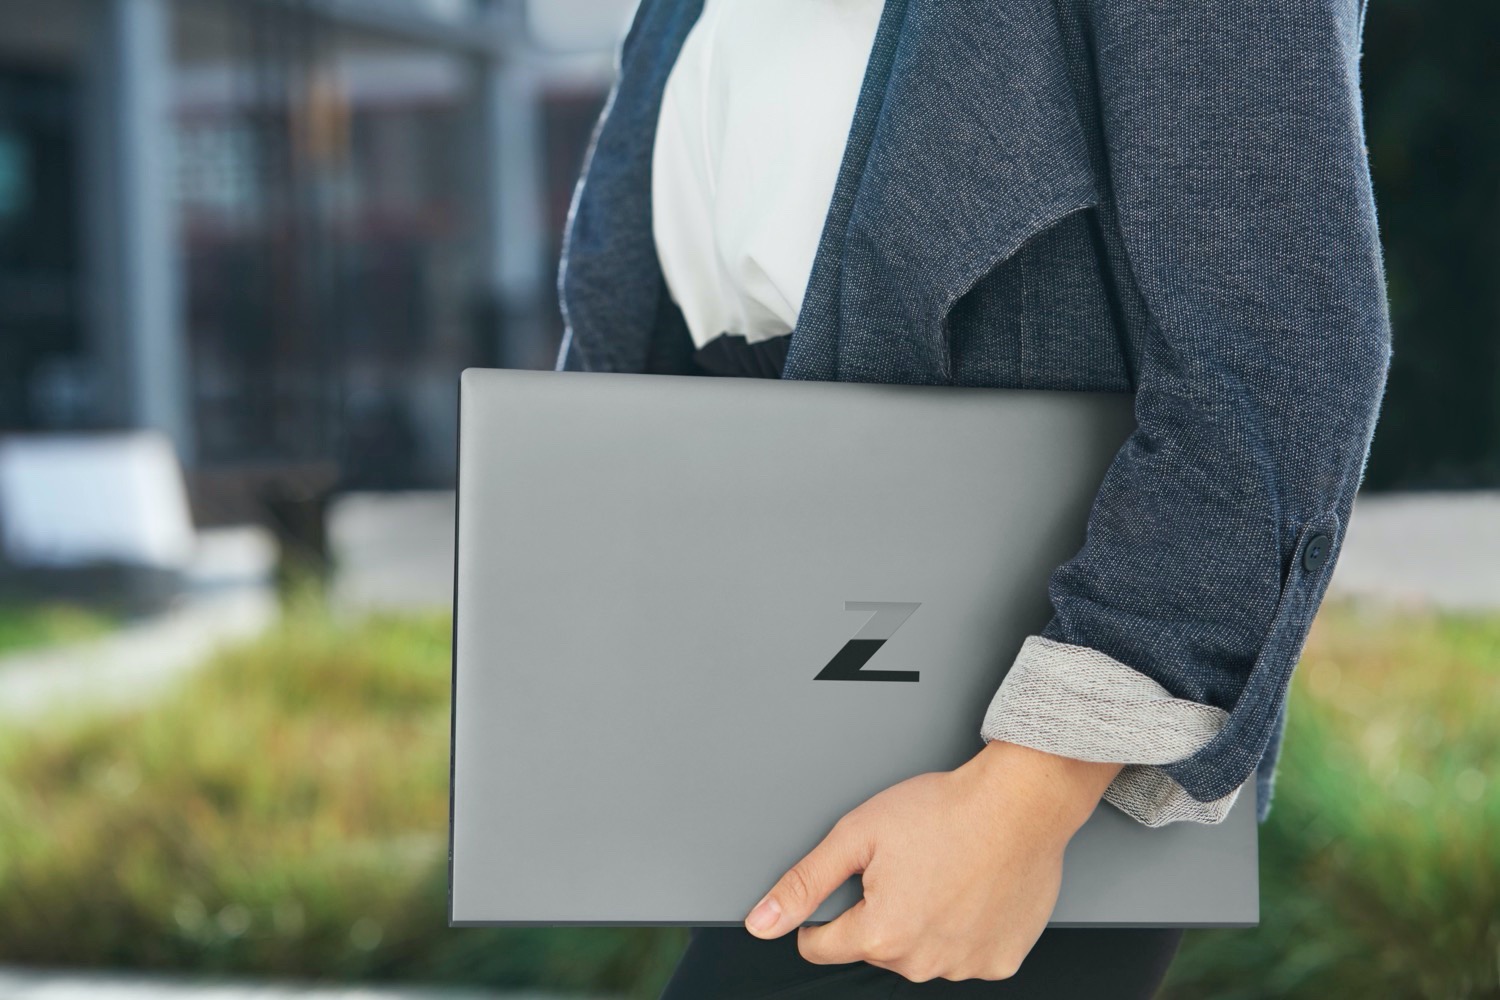 Máy trạm HP Zbook Studio G7 khẳng định bước đột phá với hiệu năng tối ưu cho kỹ thuật hạng nặng.